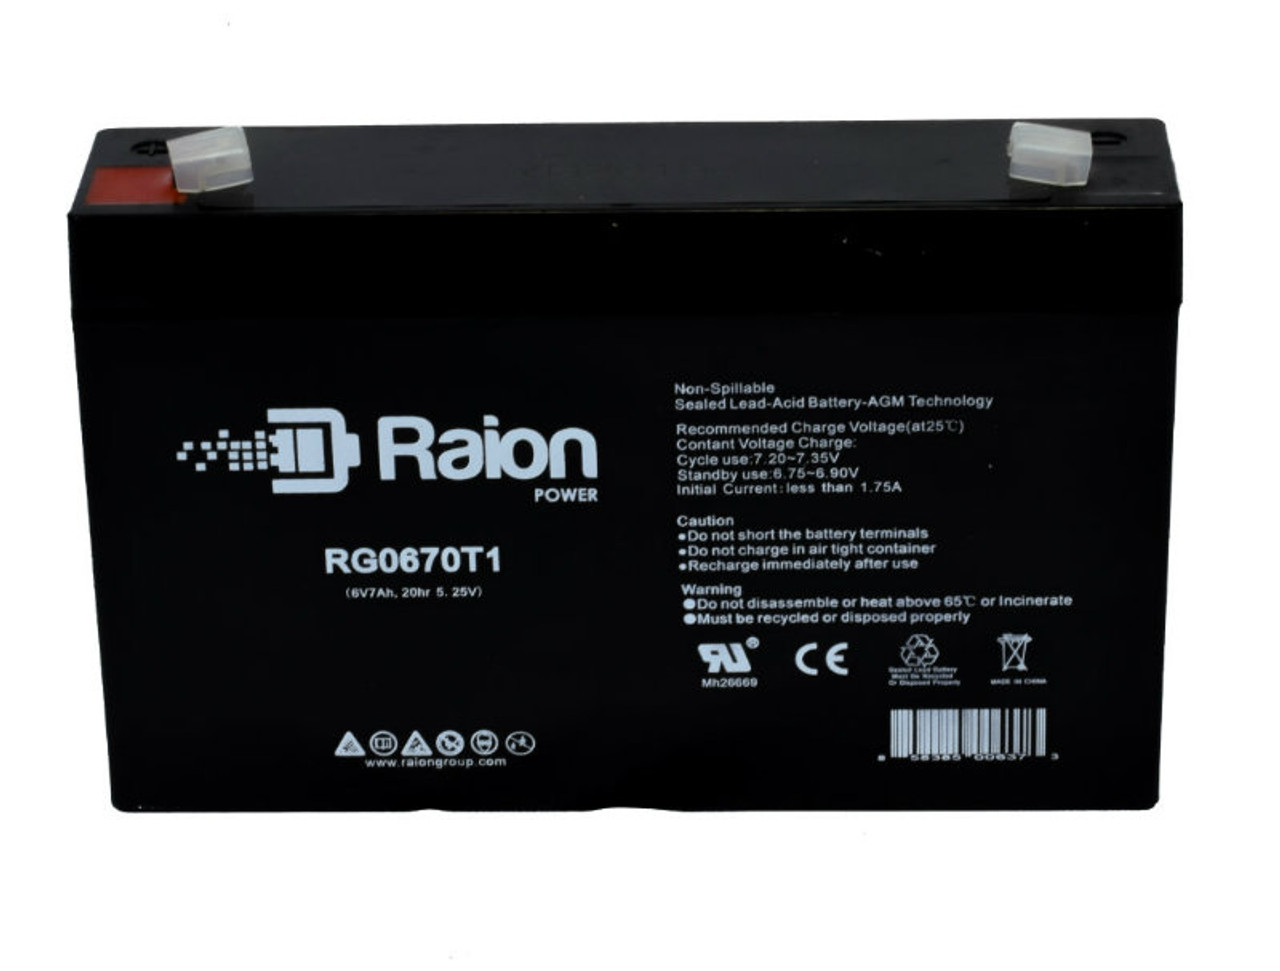 Raion Power RG0670T1 SLA Battery for XNB SN06007 OEM Battery